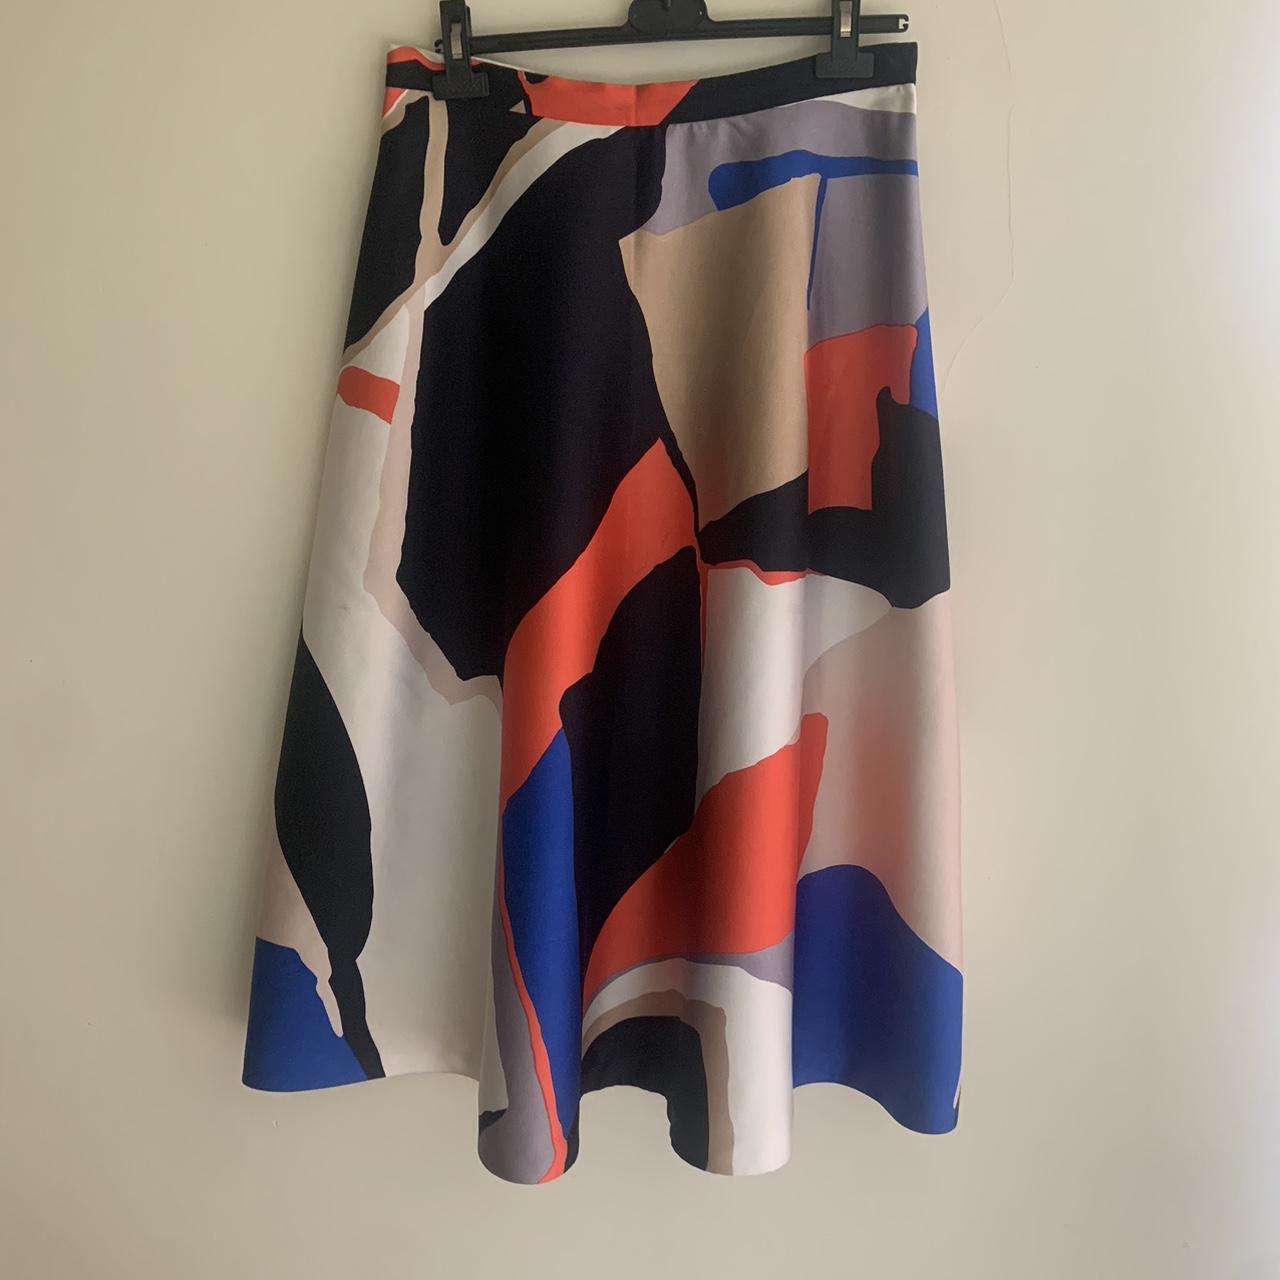 LK Bennett size 14 skirt. Hangs beautifully and... - Depop